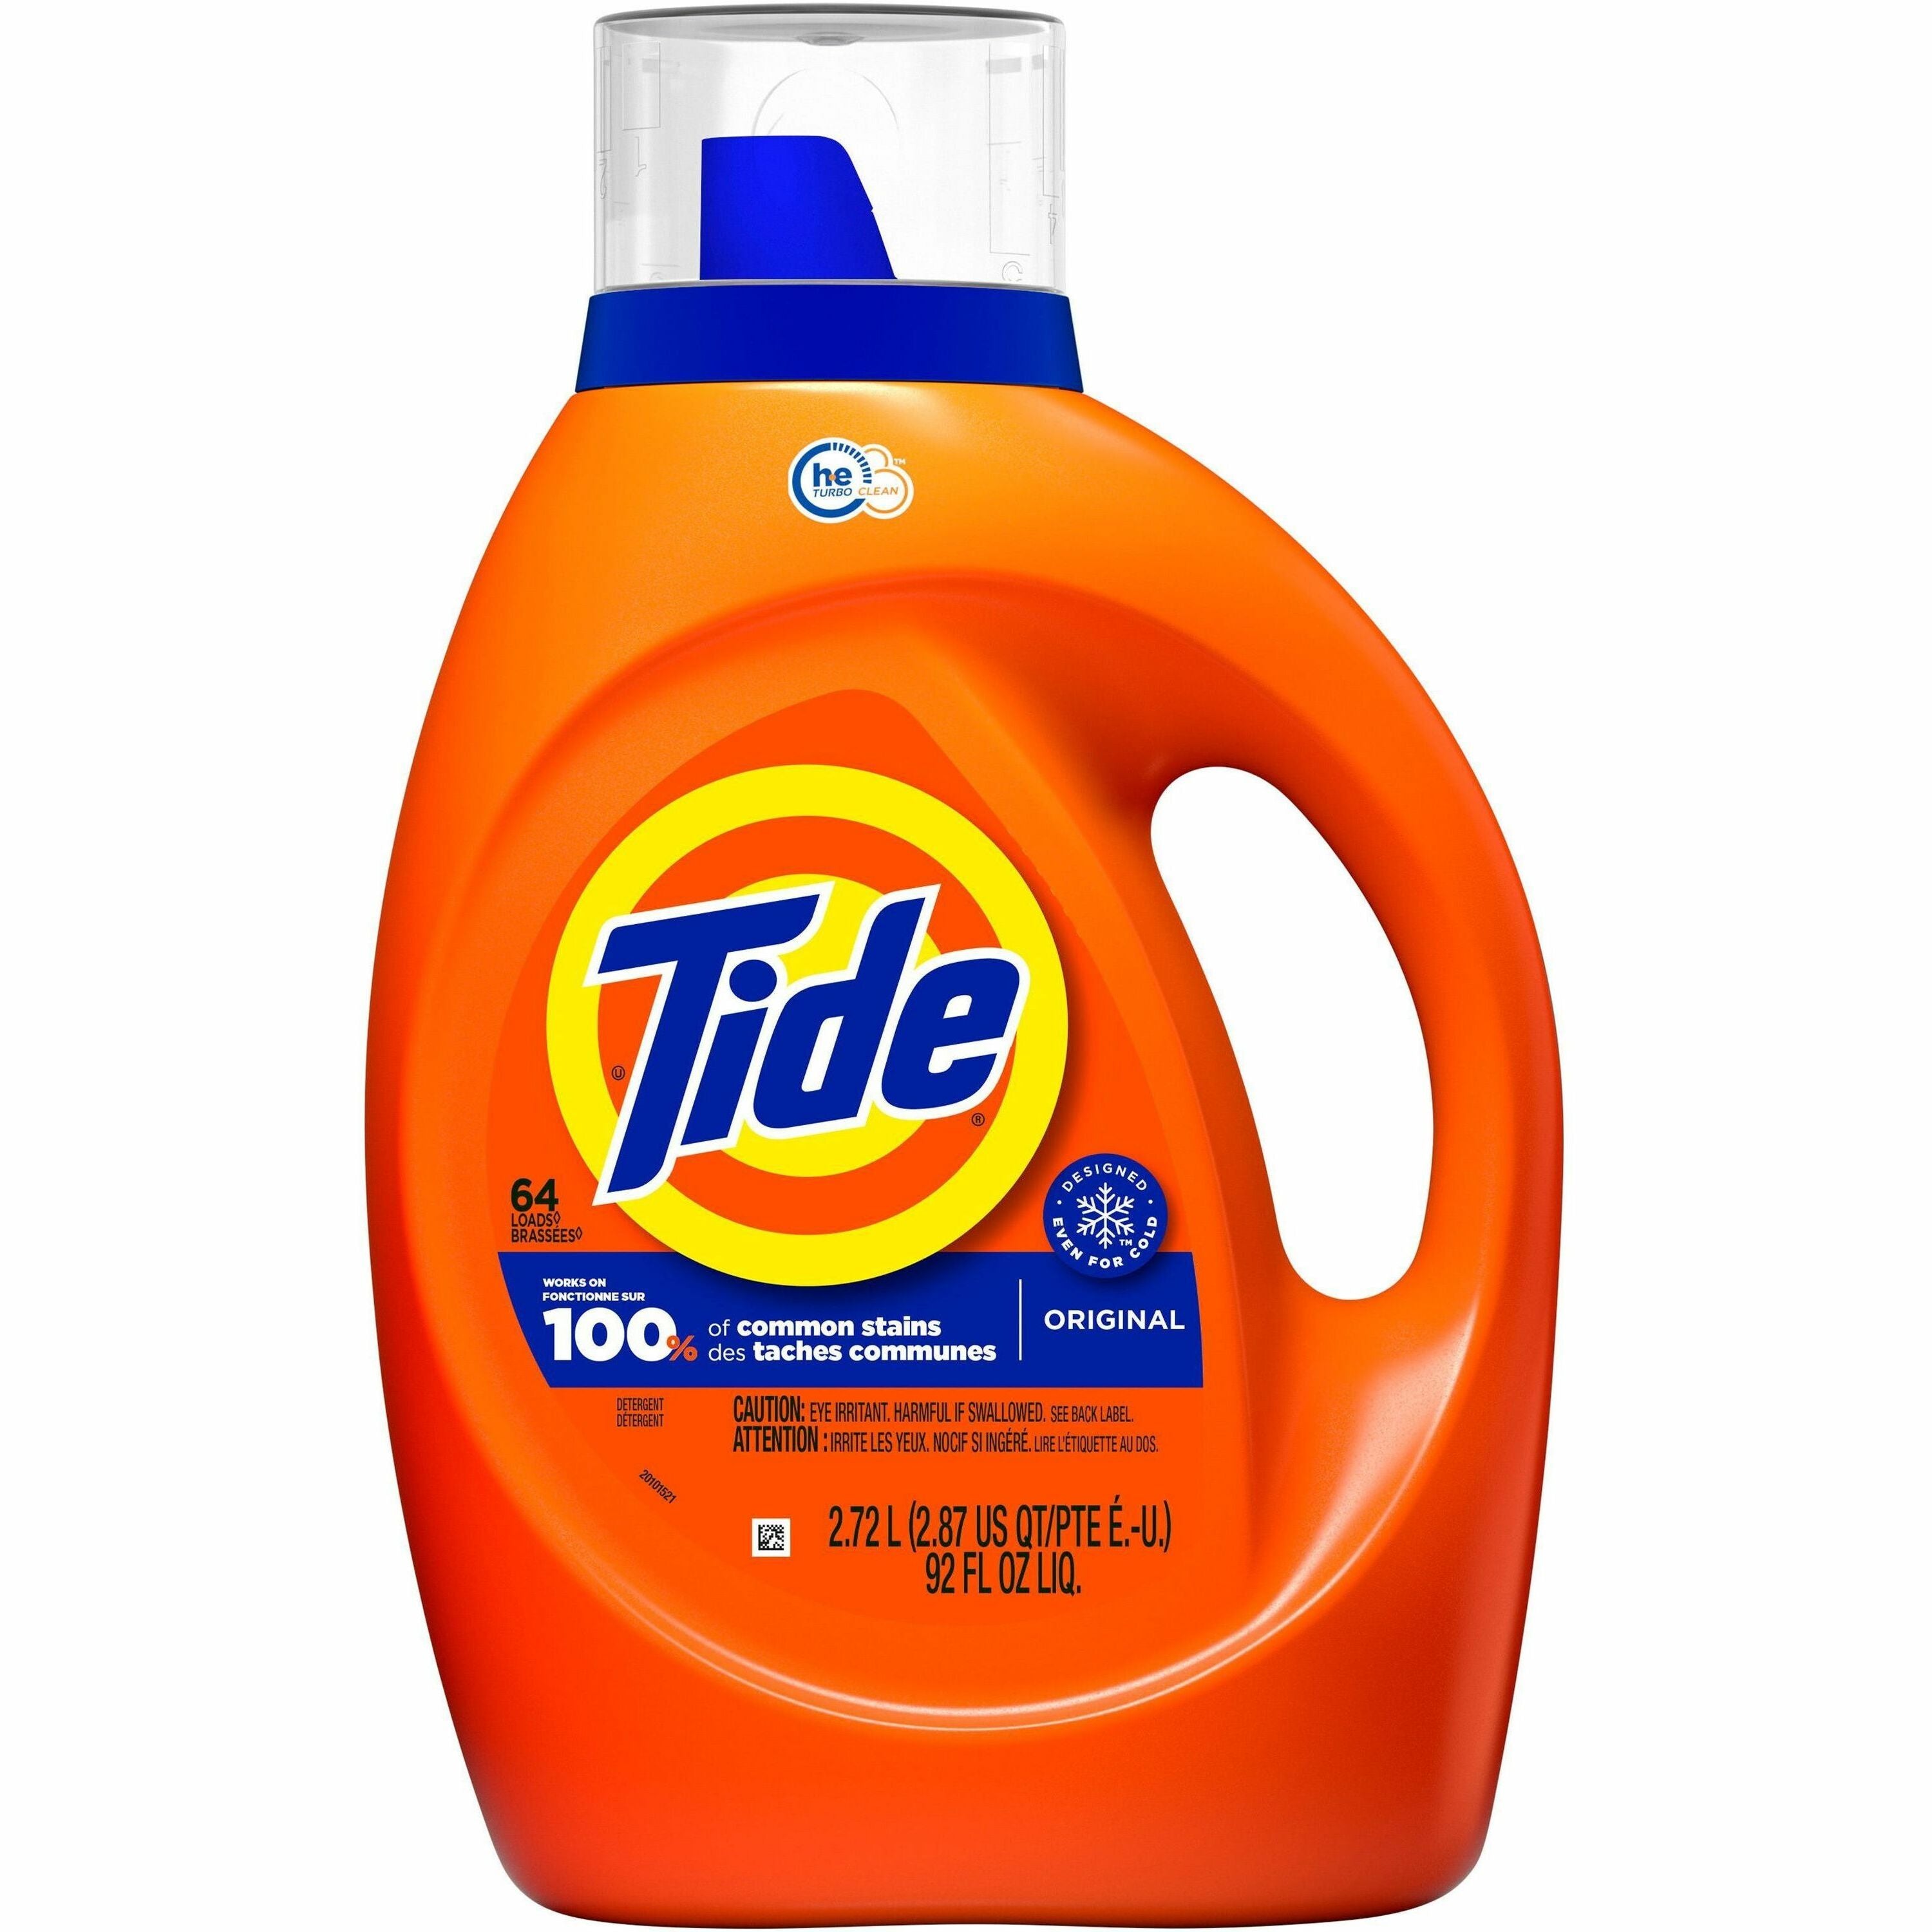 tide-liquid-laundry-detergent-concentrate-92-fl-oz-29-quart-original-scent-1-bottle-blue_pgc40217 - 1